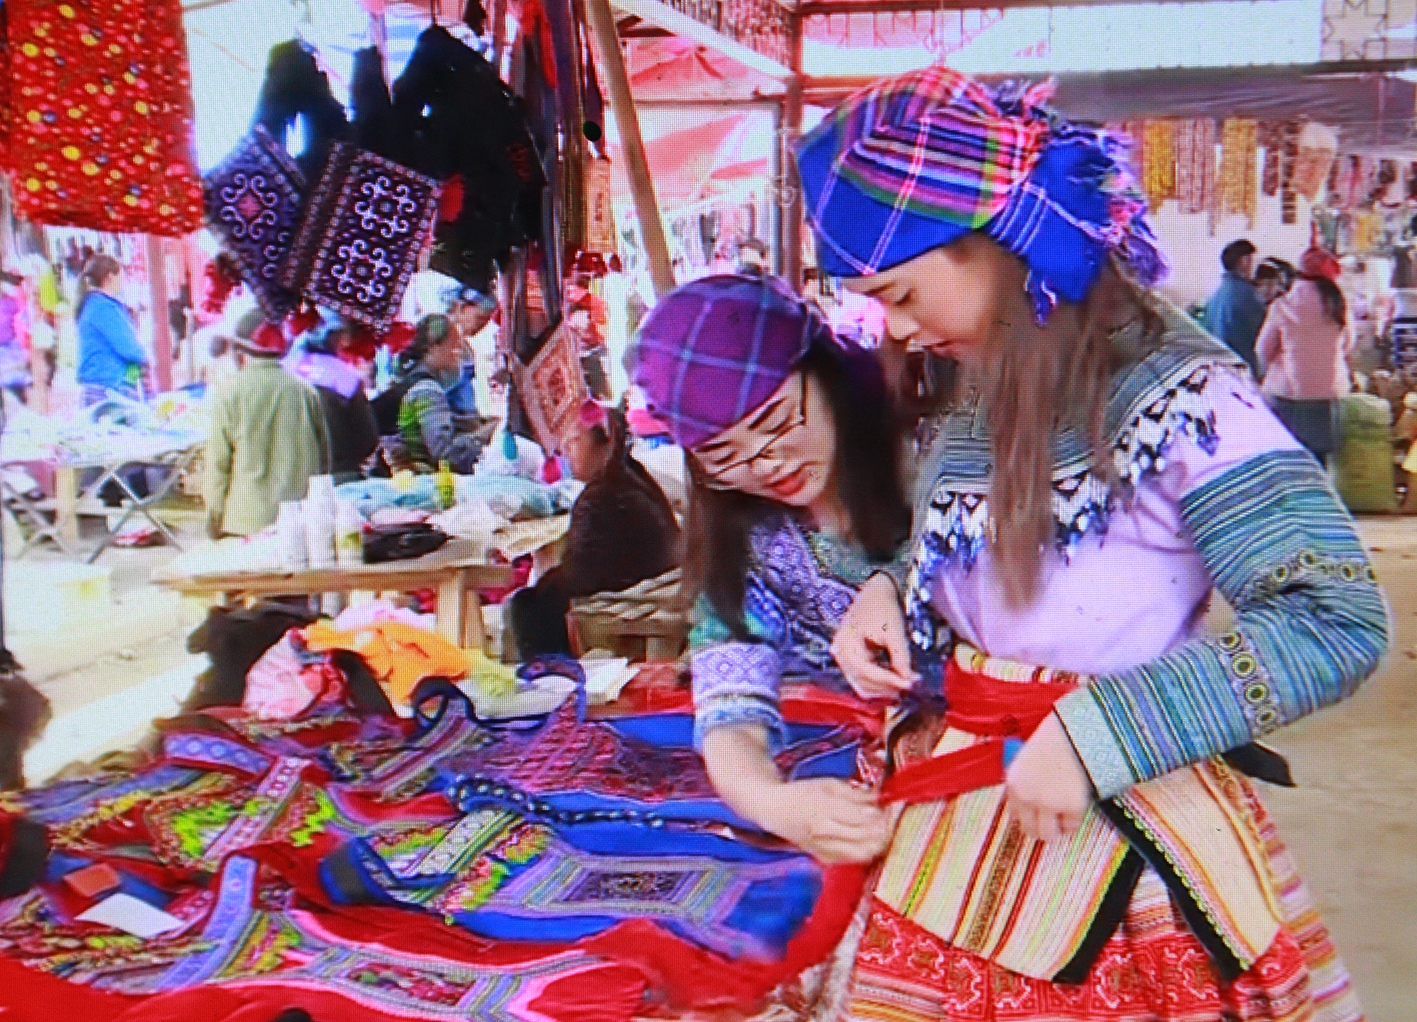 Đến Si Ma Cai dịp này du khách còn có dịp đi chợ phiên vùng cao, tham gia các hoạt động văn nghệ - thể thao dân tộc đặc sắc